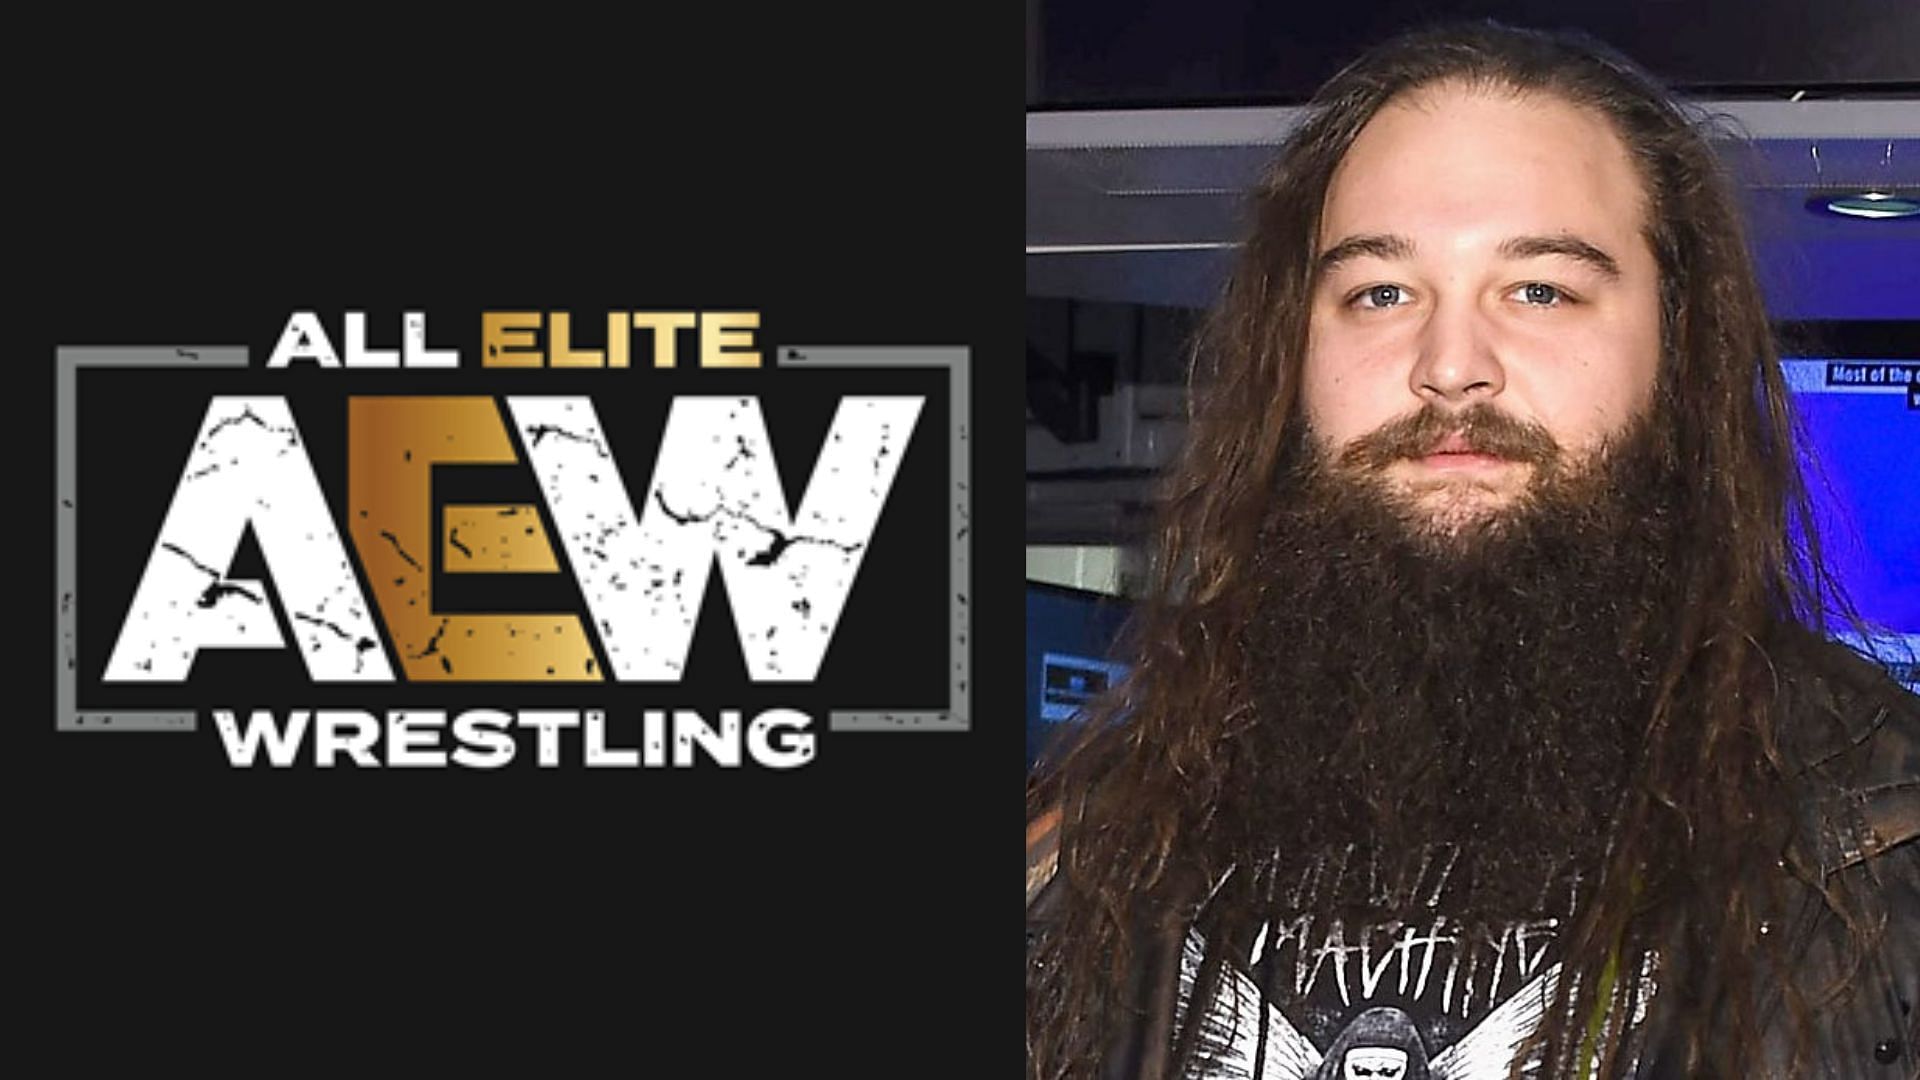 Bray Wyatt has passed away at age 36.